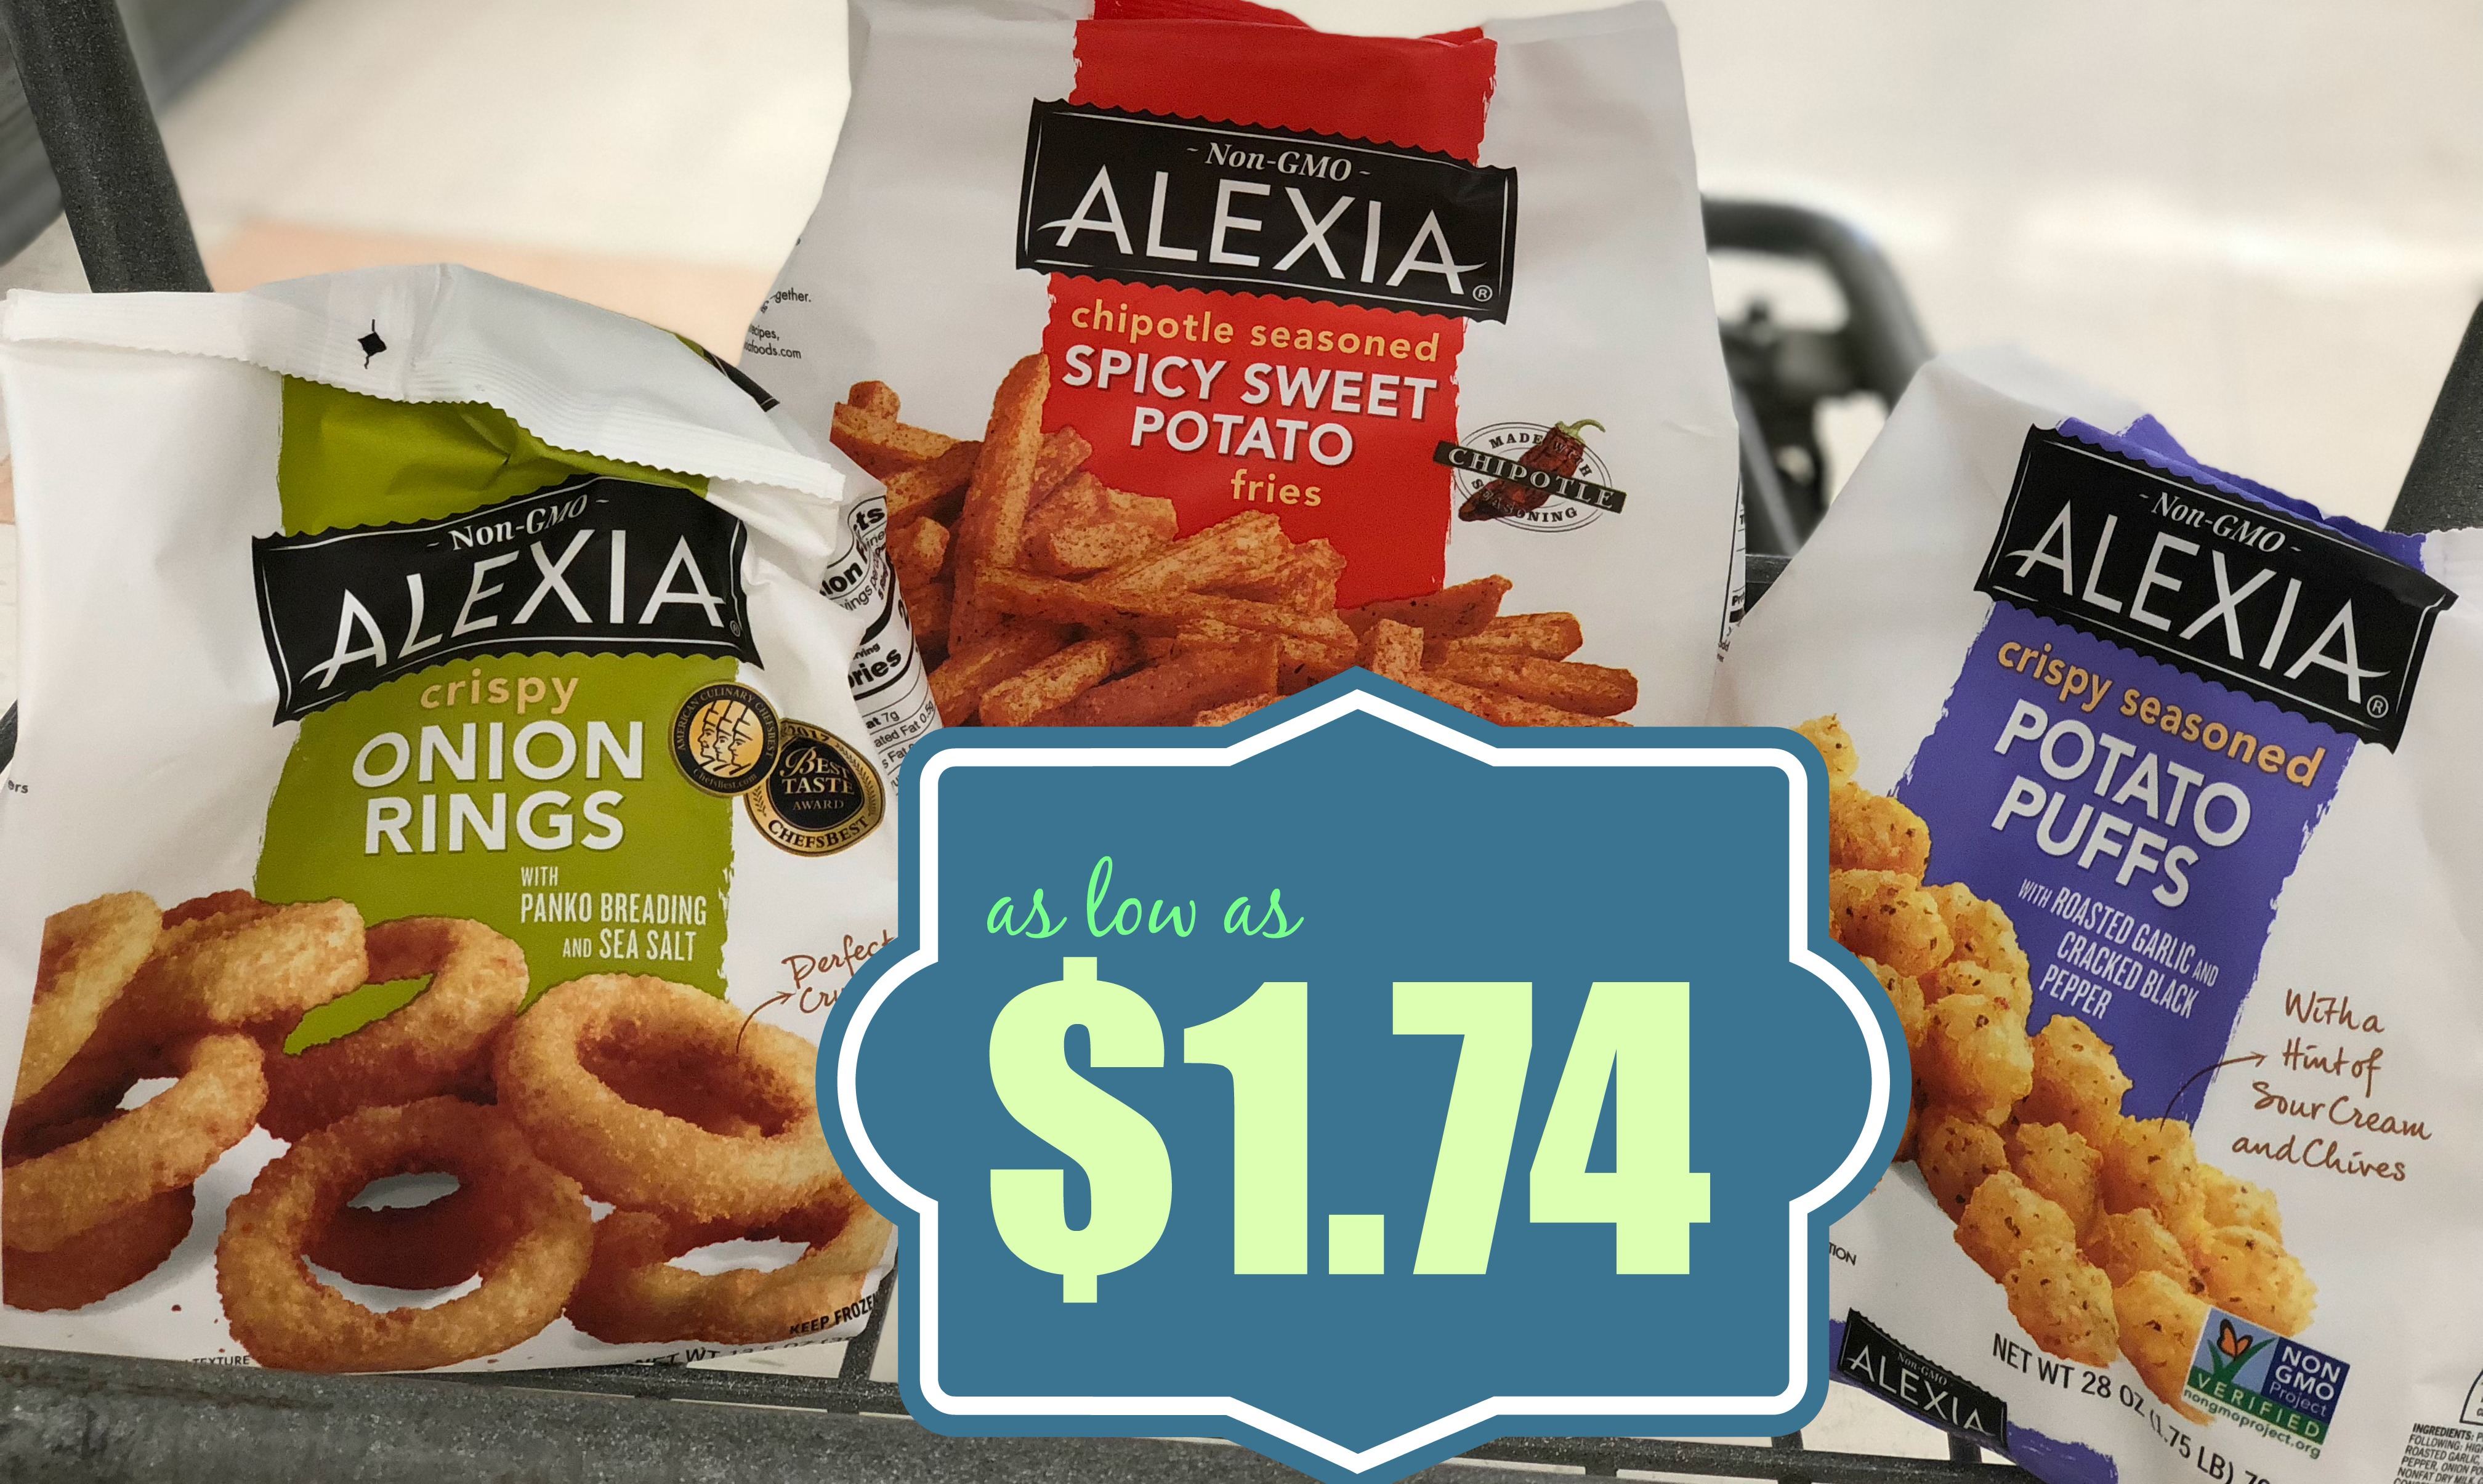 Alexia Crispy Onion Rings with Panko Breading and Sea Salt, Non-GMO  Ingredients, 13.5 oz (Frozen) - Walmart.com